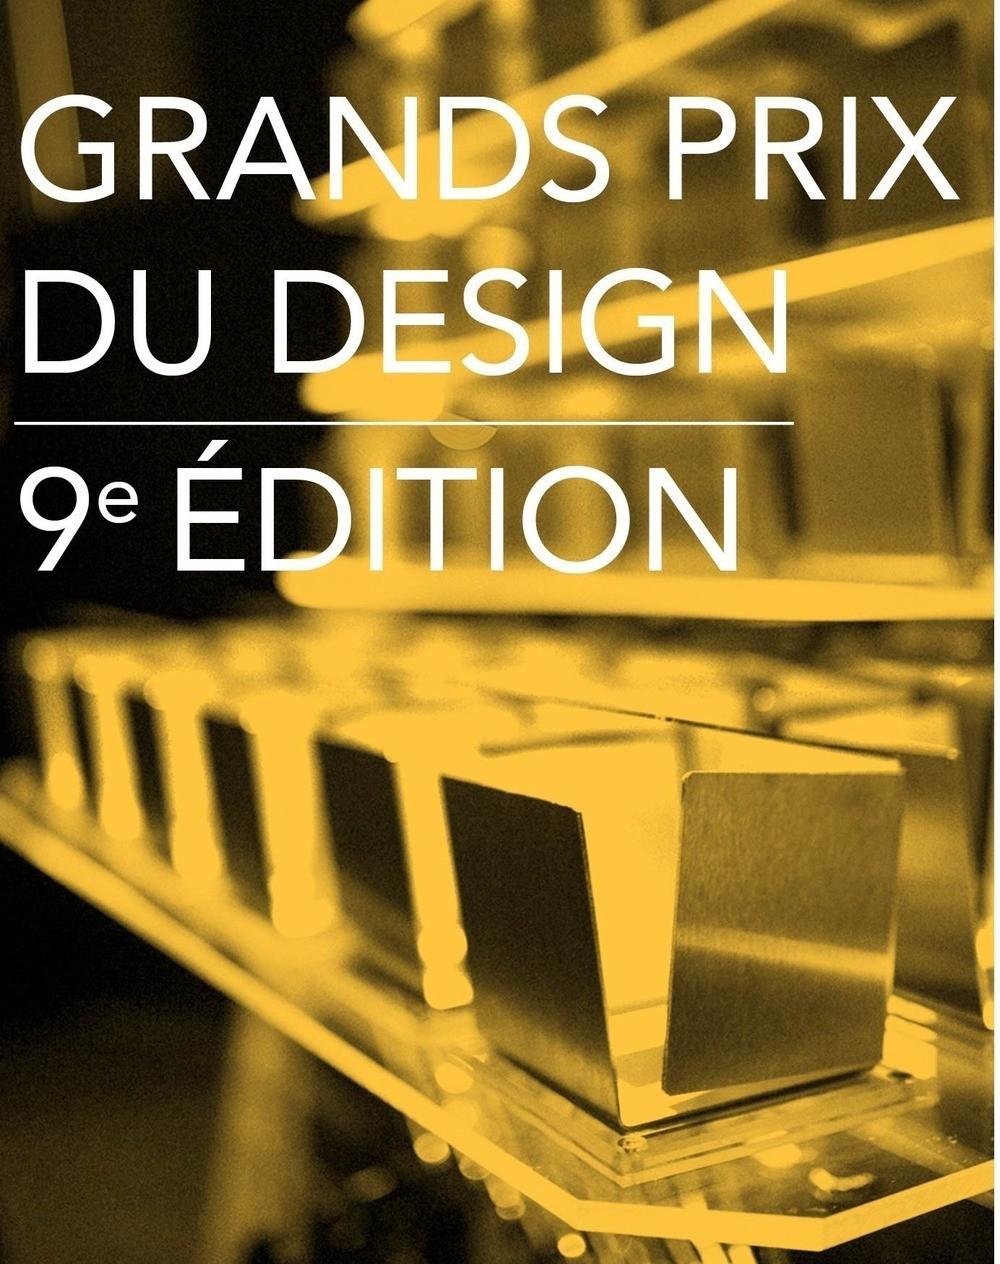 Les lauréats de la 9e édition des Grands Prix du Design sont…